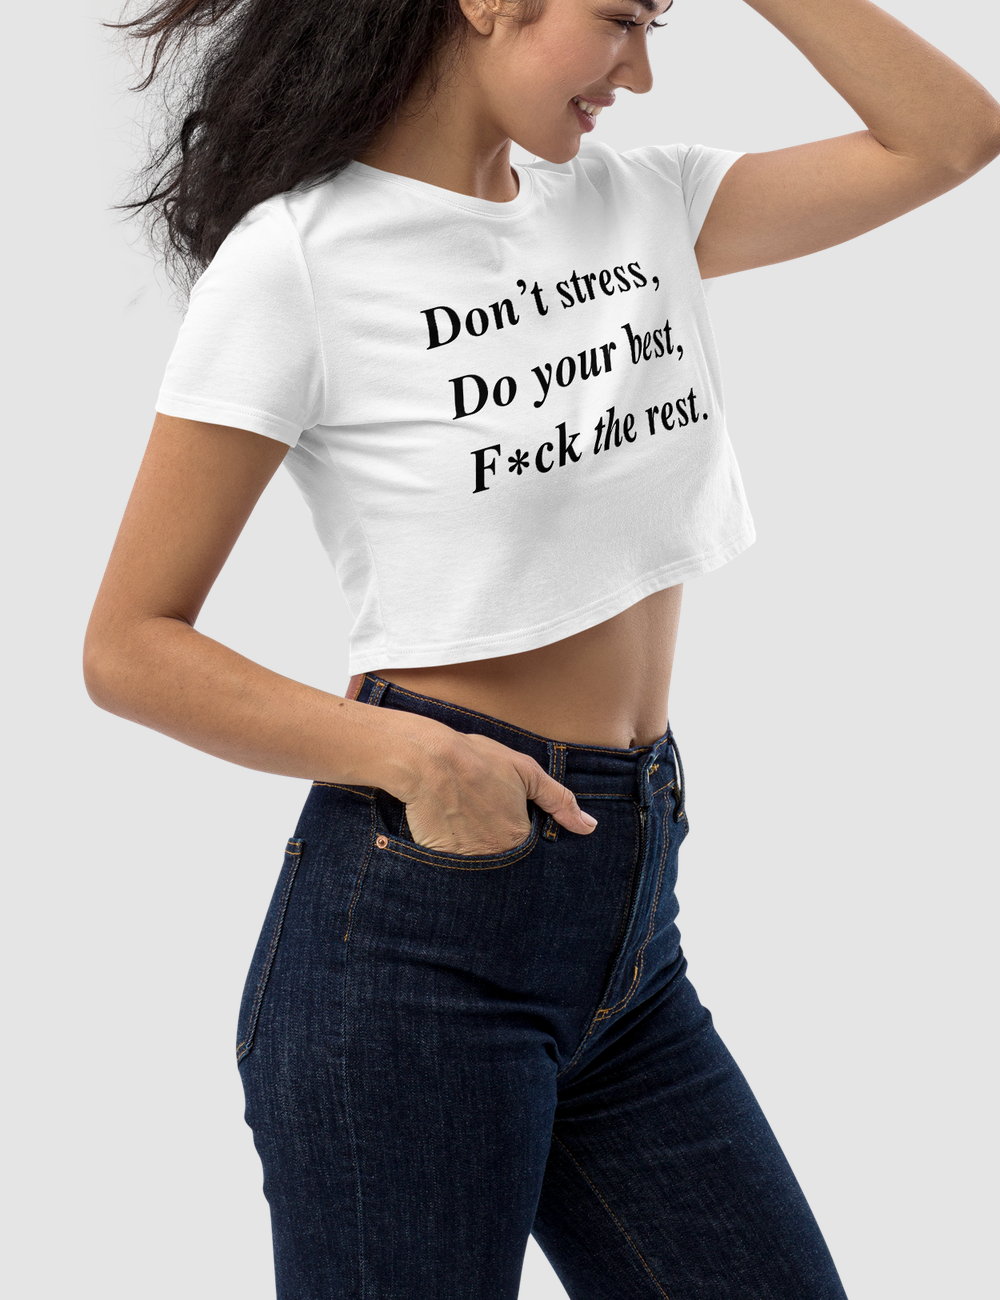 Don't Stress Do Your Best F*ck The Rest | Women's Crop Top T-Shirt OniTakai